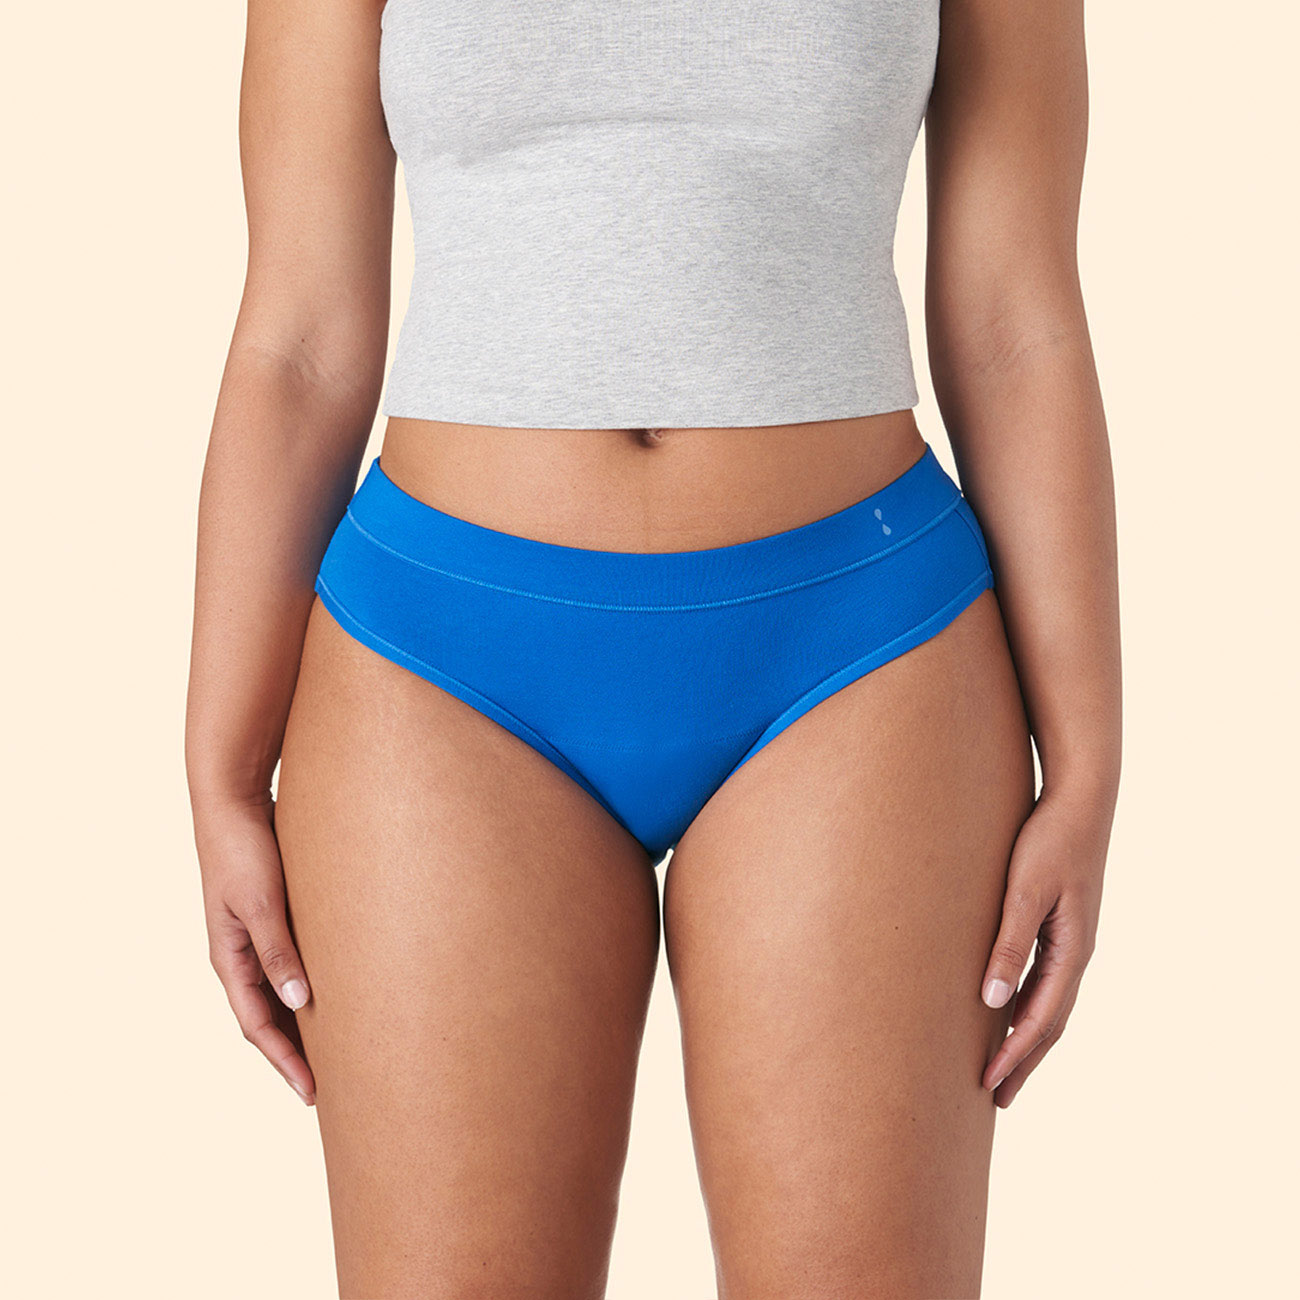 Thinx for All™ Women's Boyshort Period Underwear, Moderate